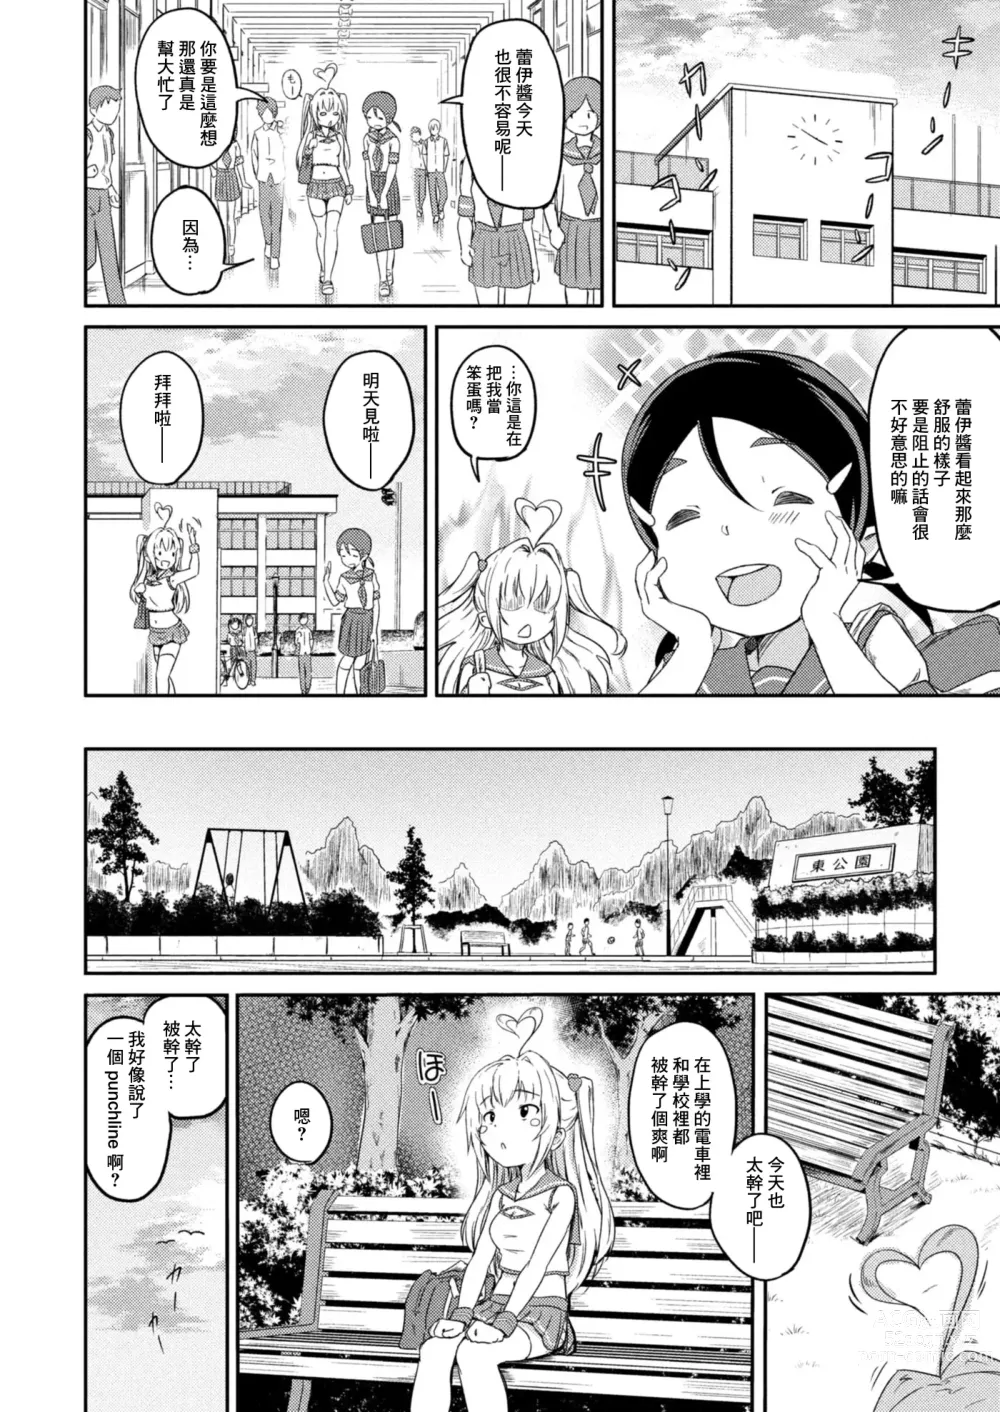 Page 18 of manga Bishoujo Karte Dainiwa Tokuitaishitsu